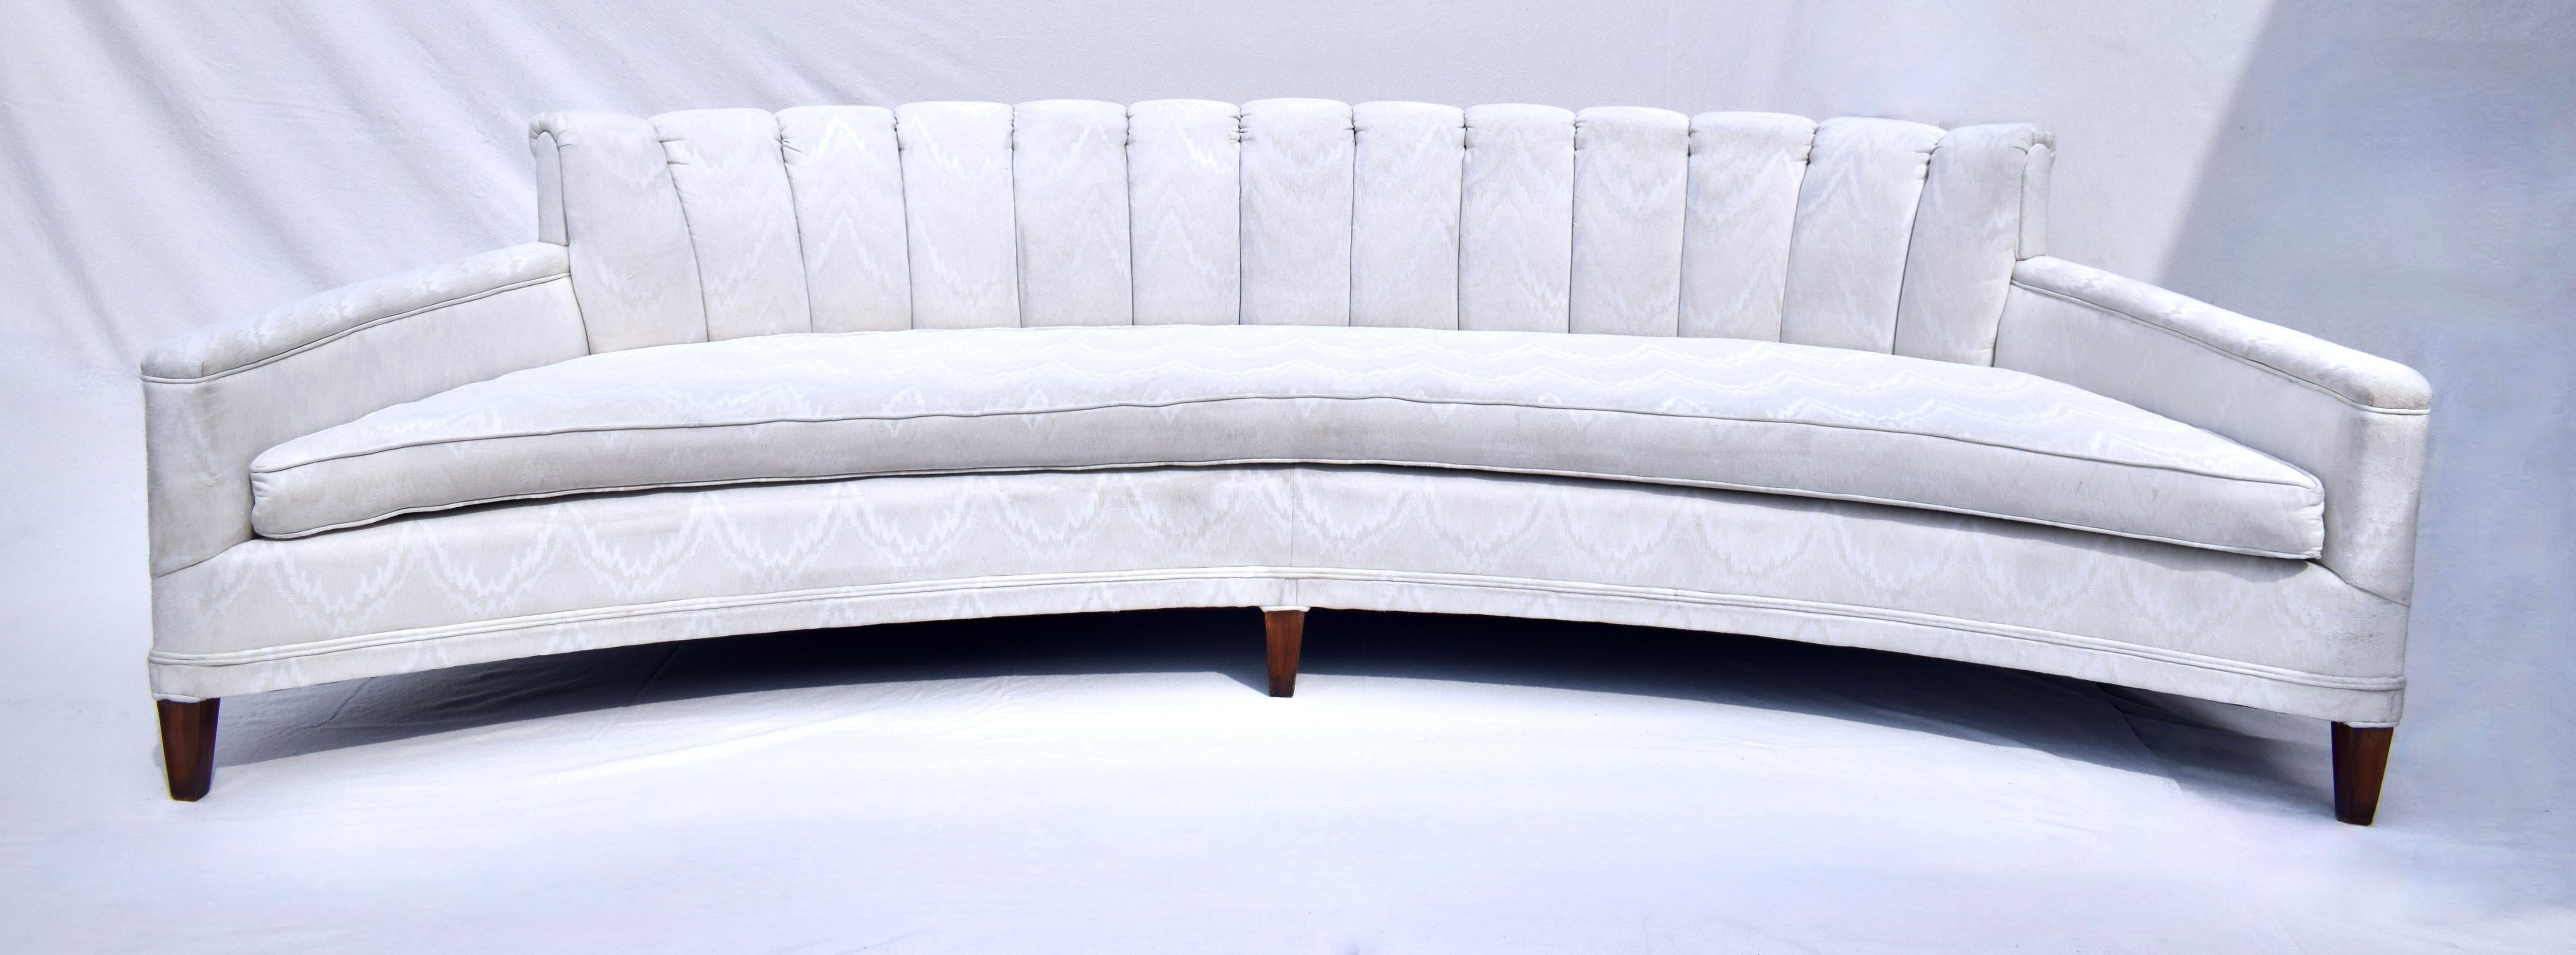 Gebogenes Sofa von Harvey Probber aus den 1960er Jahren mit auffälliger, speziell angefertigter Rückenlehne und Beinen aus Walnussholz, die Ende der 1990er Jahre neu gepolstert wurden. Diese zeitlos schicke Schönheit eignet sich für eine Vielzahl